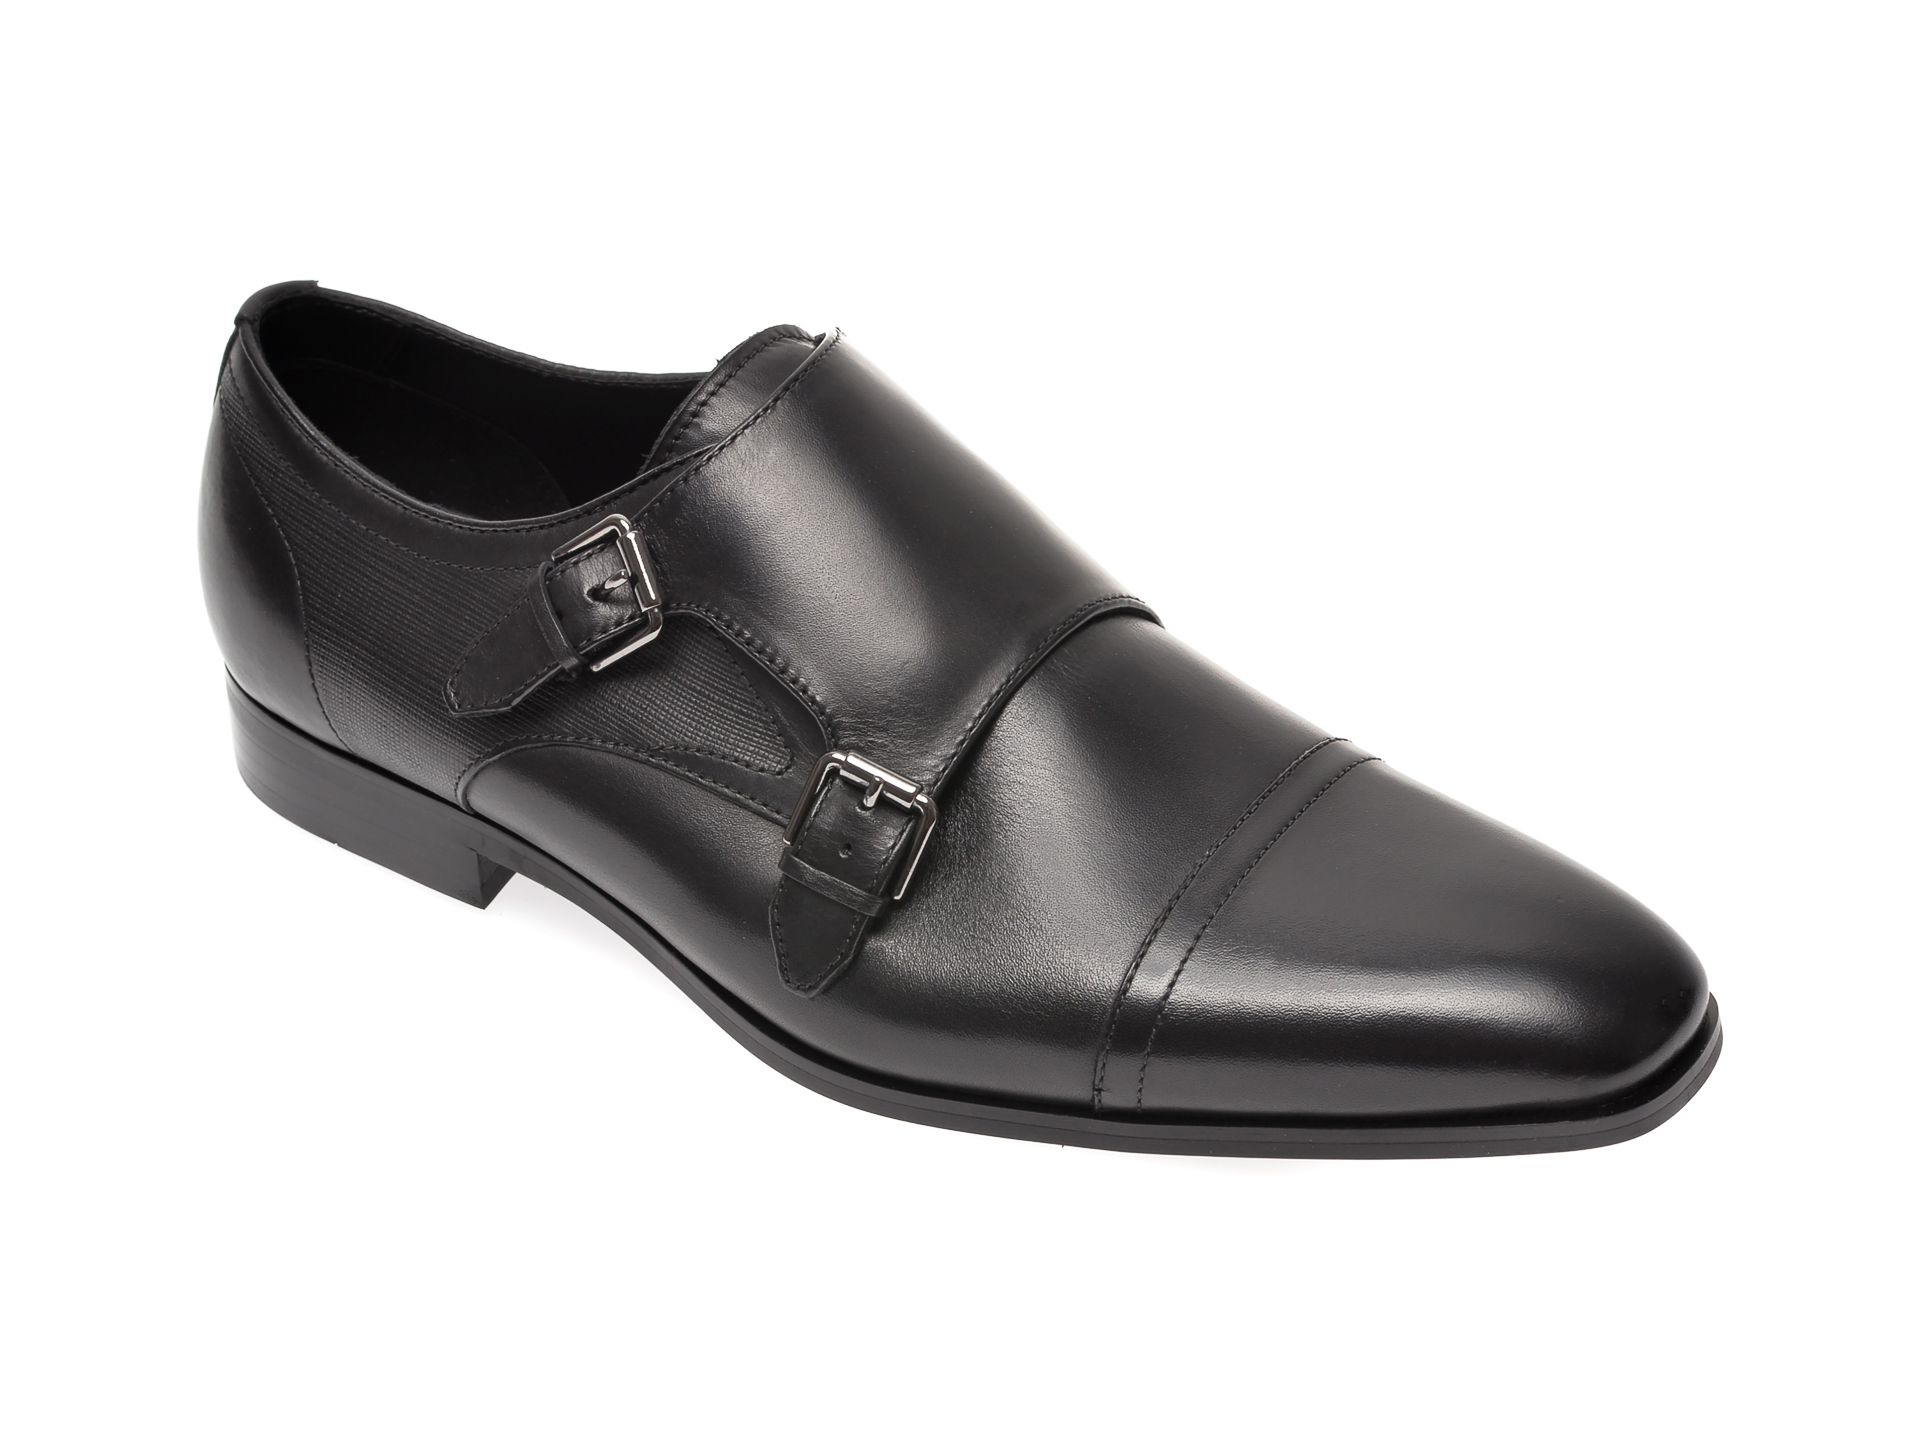 Pantofi ALDO negri, Hoeswen001, din piele naturala Aldo imagine 2022 reducere